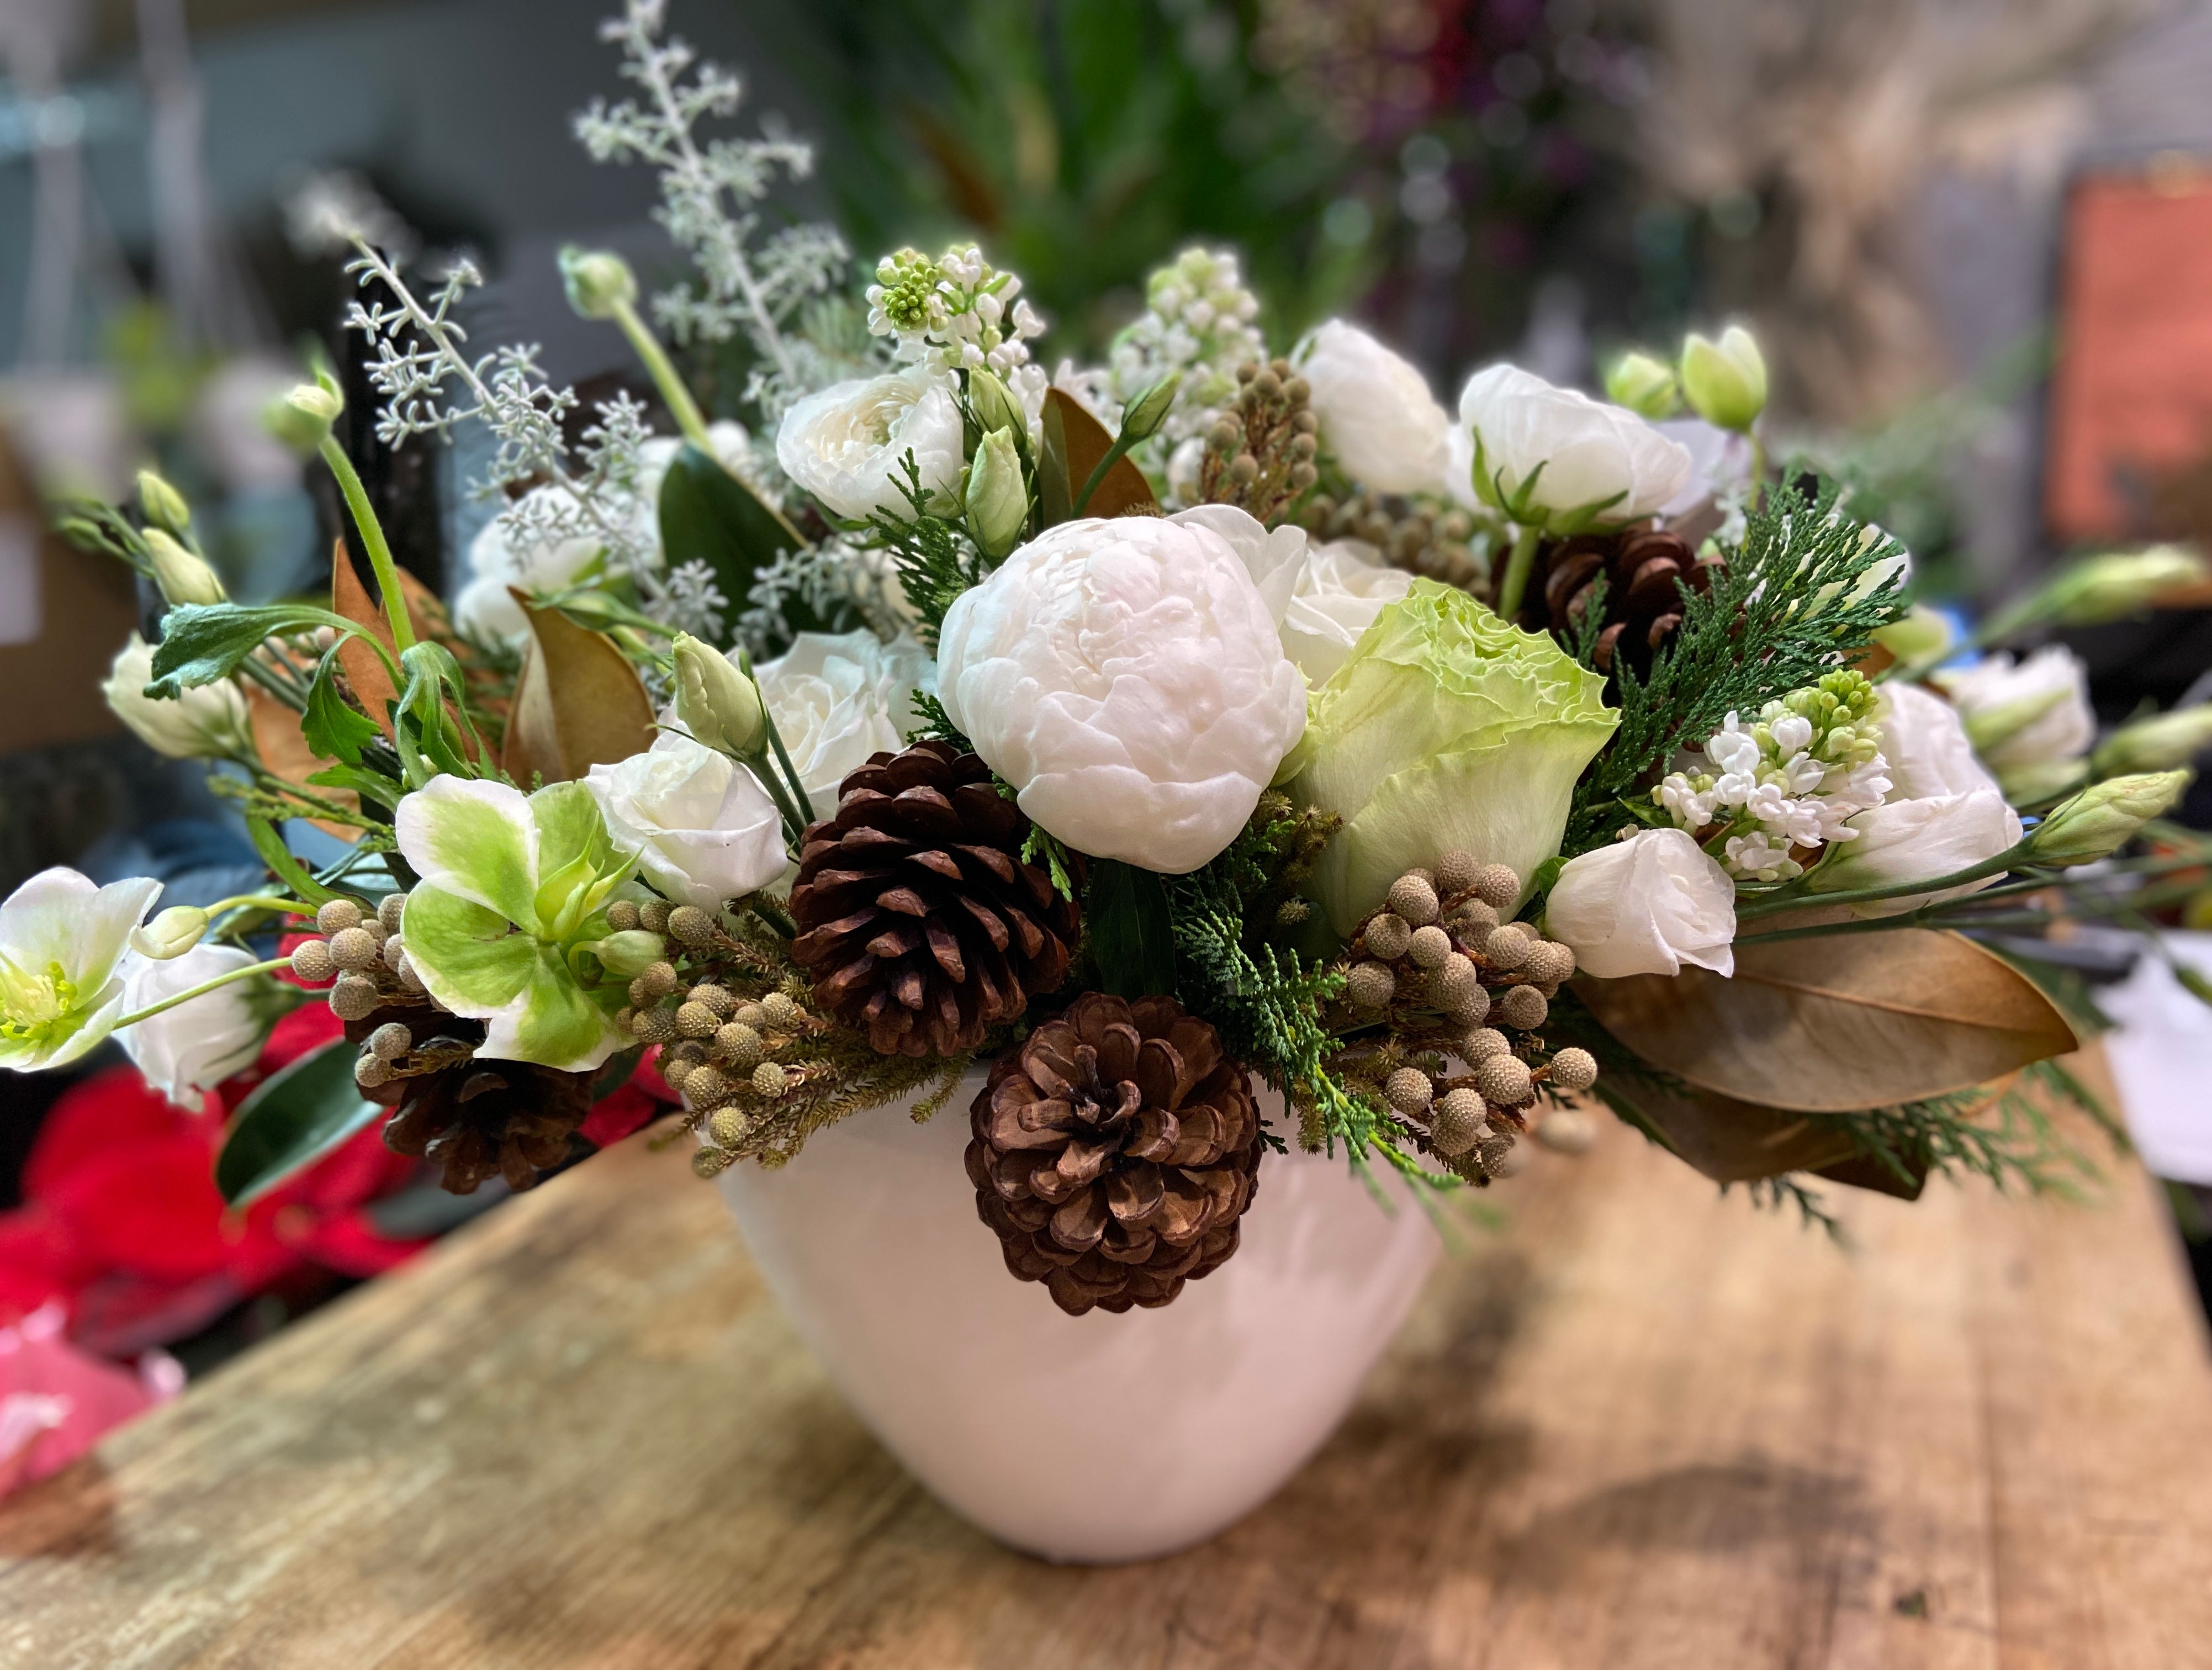 Winter Wonderland- with Peonies, Ranunculus, Hellebore and